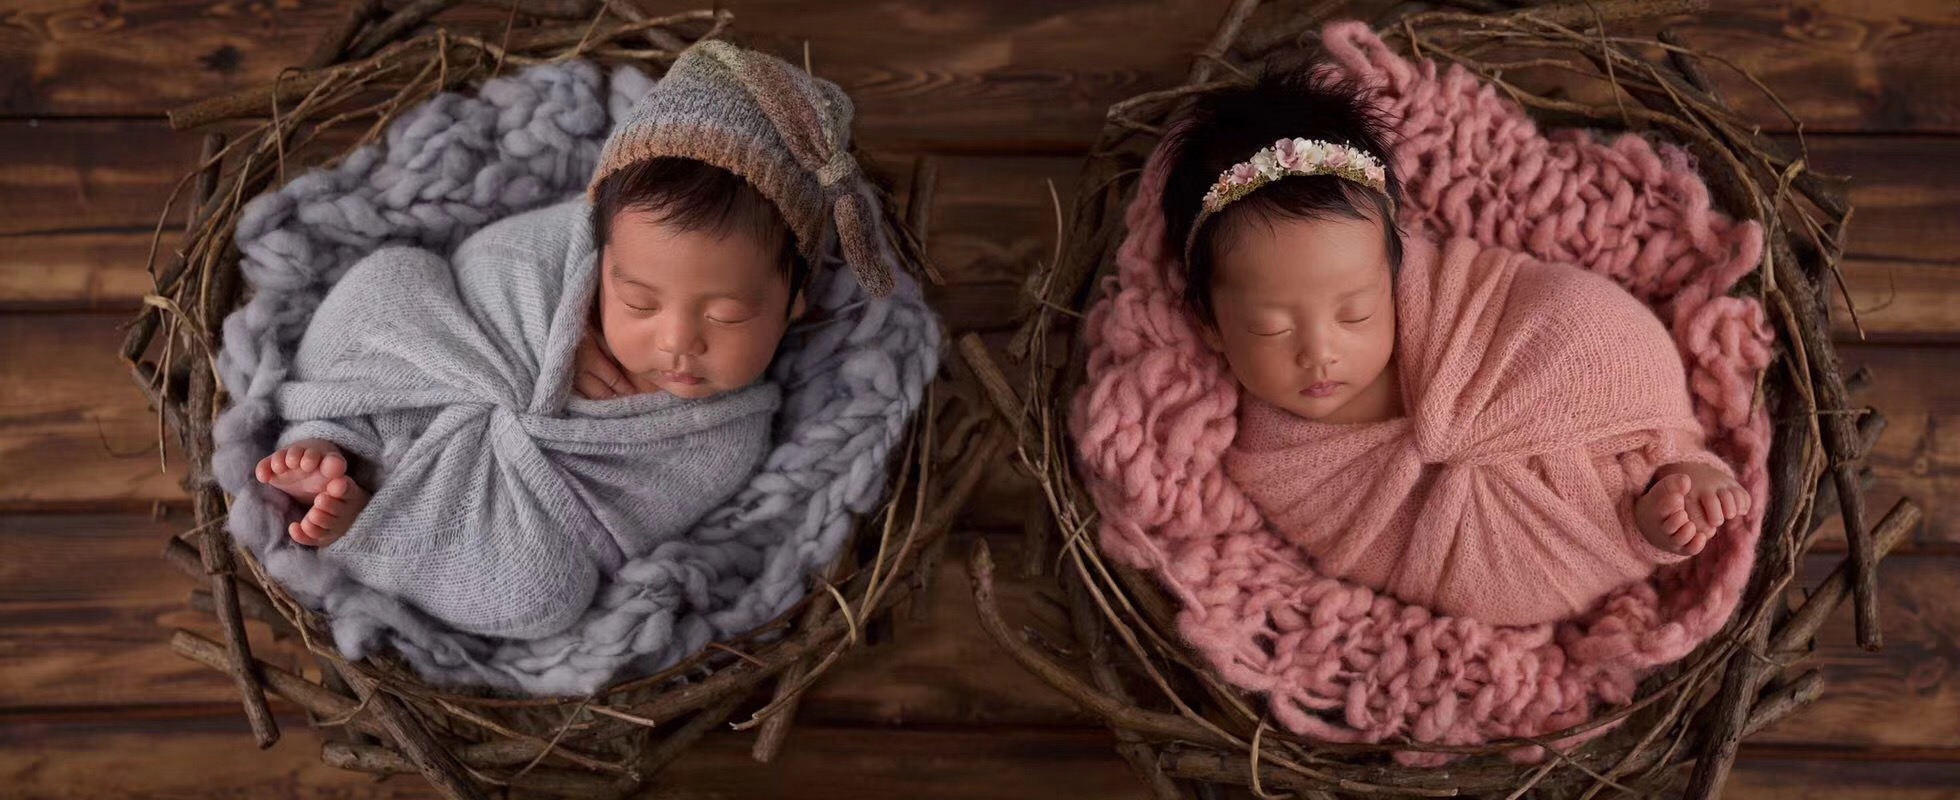 可爱的龙凤胎宝宝在婴儿床里玩耍-蓝牛仔影像-中国原创广告影像素材